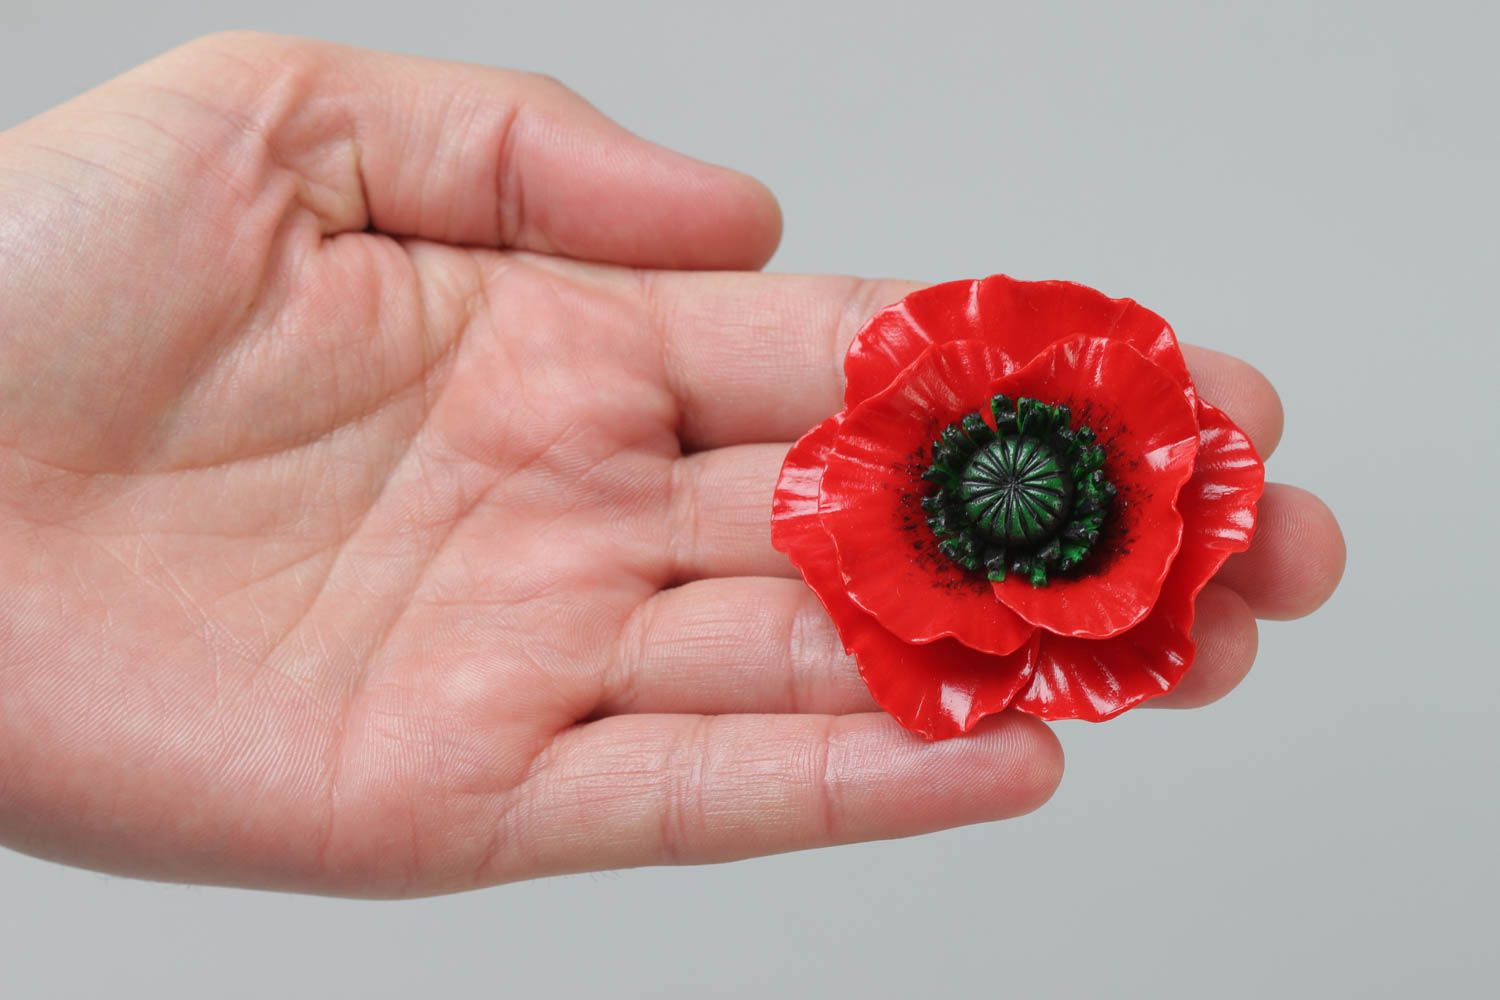 Брошь в виде цветка из полимерной глины мак красная большая красивая хэнд мейд фото 5